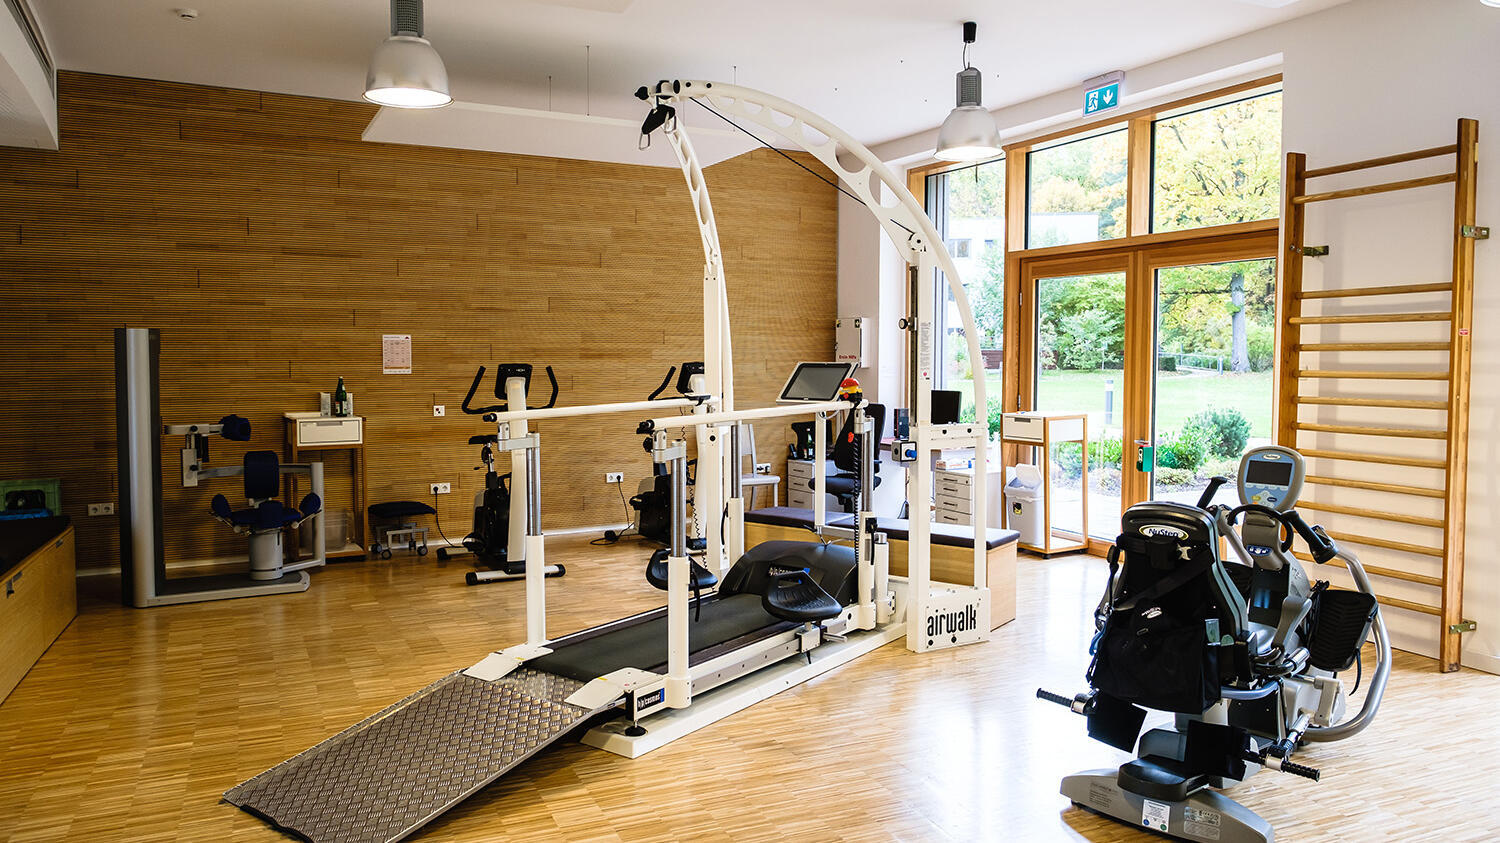 Modernes Geräte für die Physiotherapie in einem großen Raum.